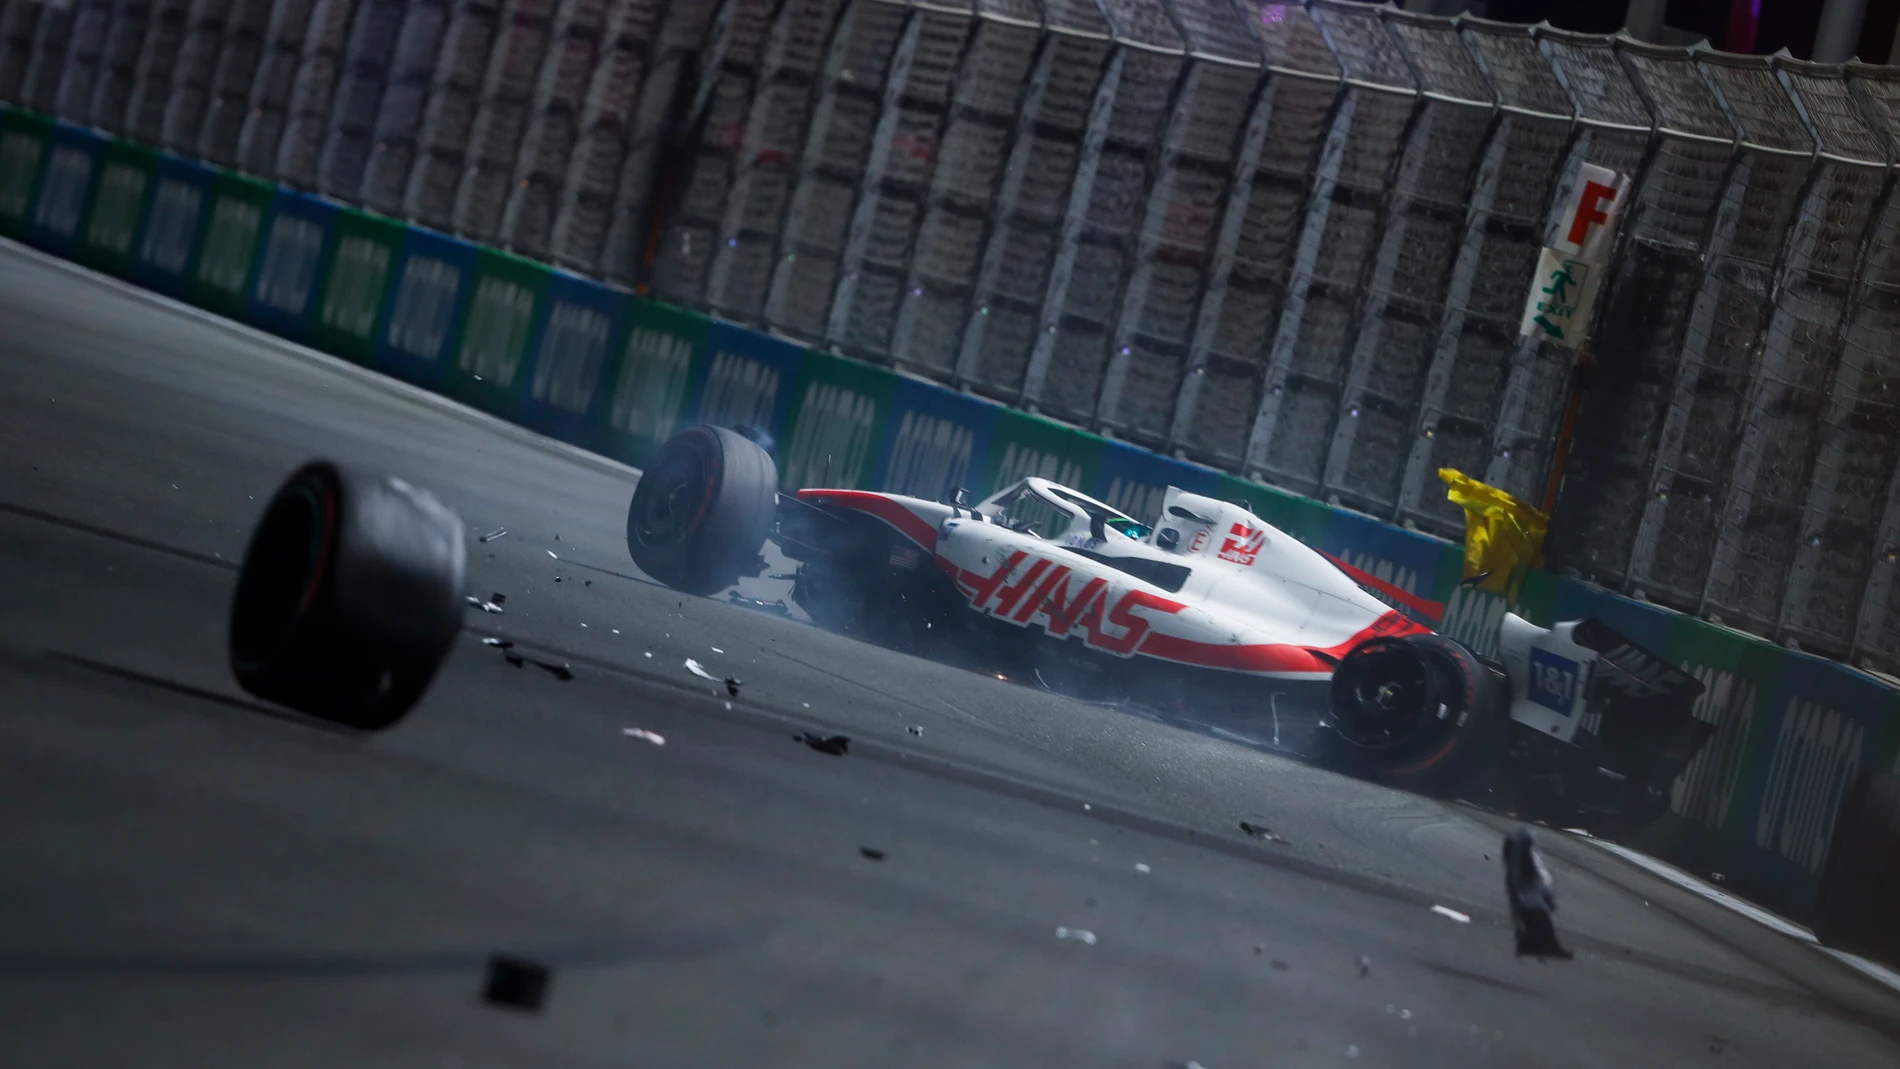 El coche de Ralf Schumacher terminó partido en dos tras su accidente en Abu Dabi